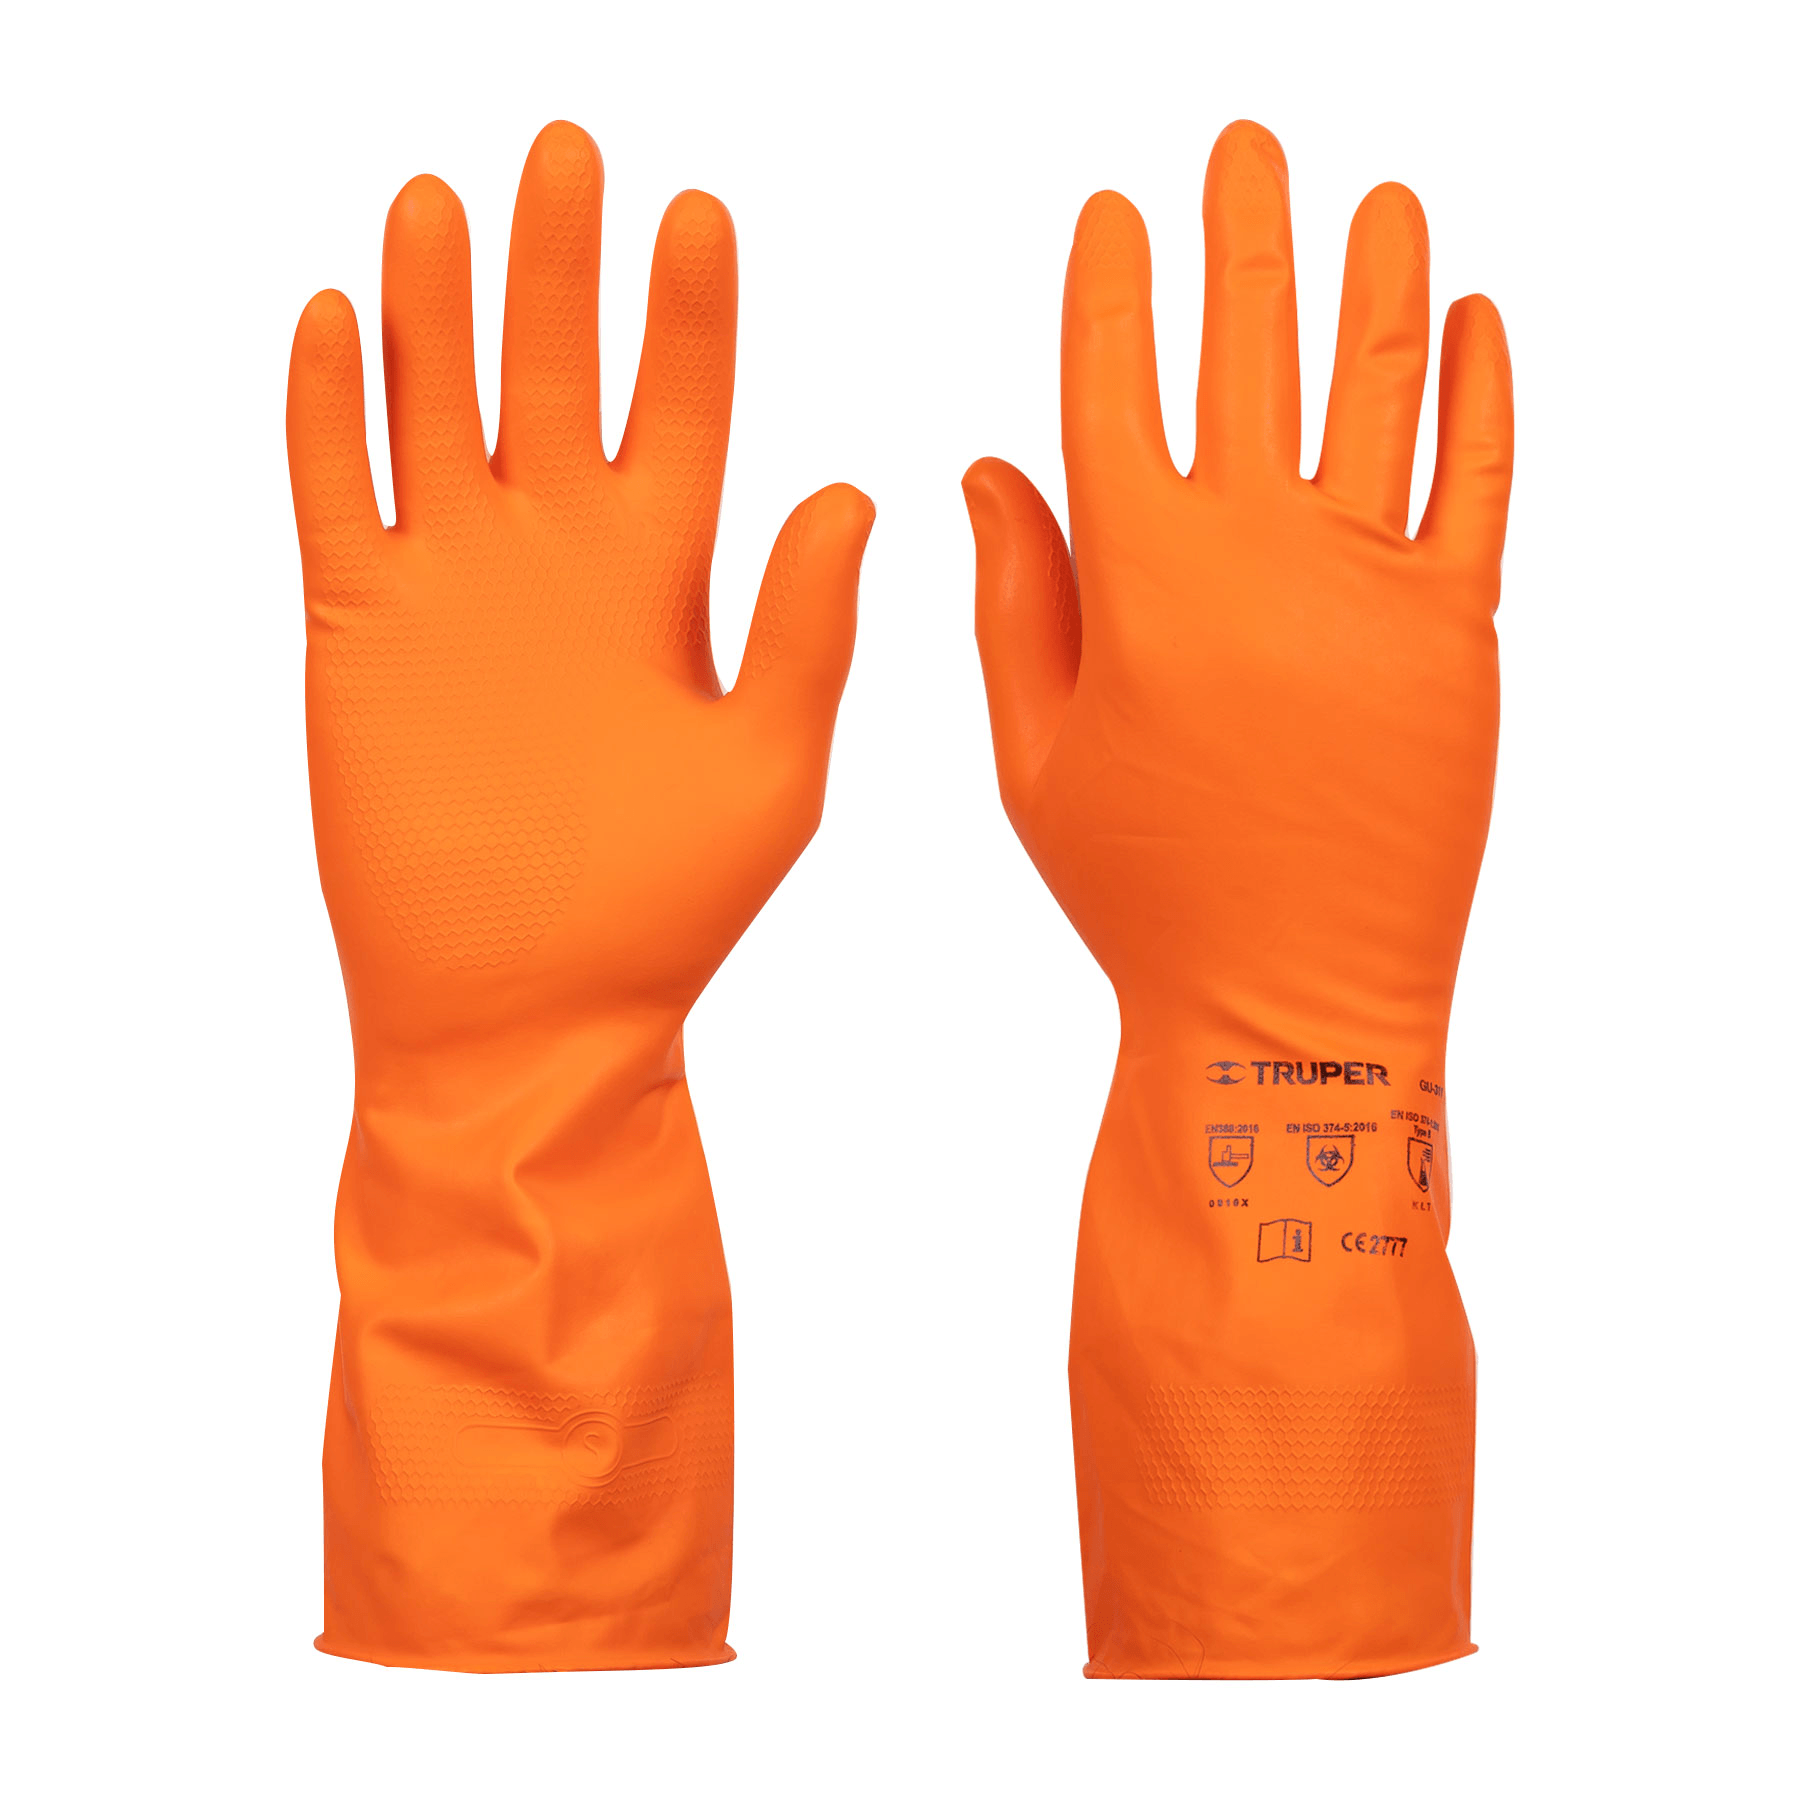 Guantes de látex para limpieza, color naranja - FERRETERÍA WITZI